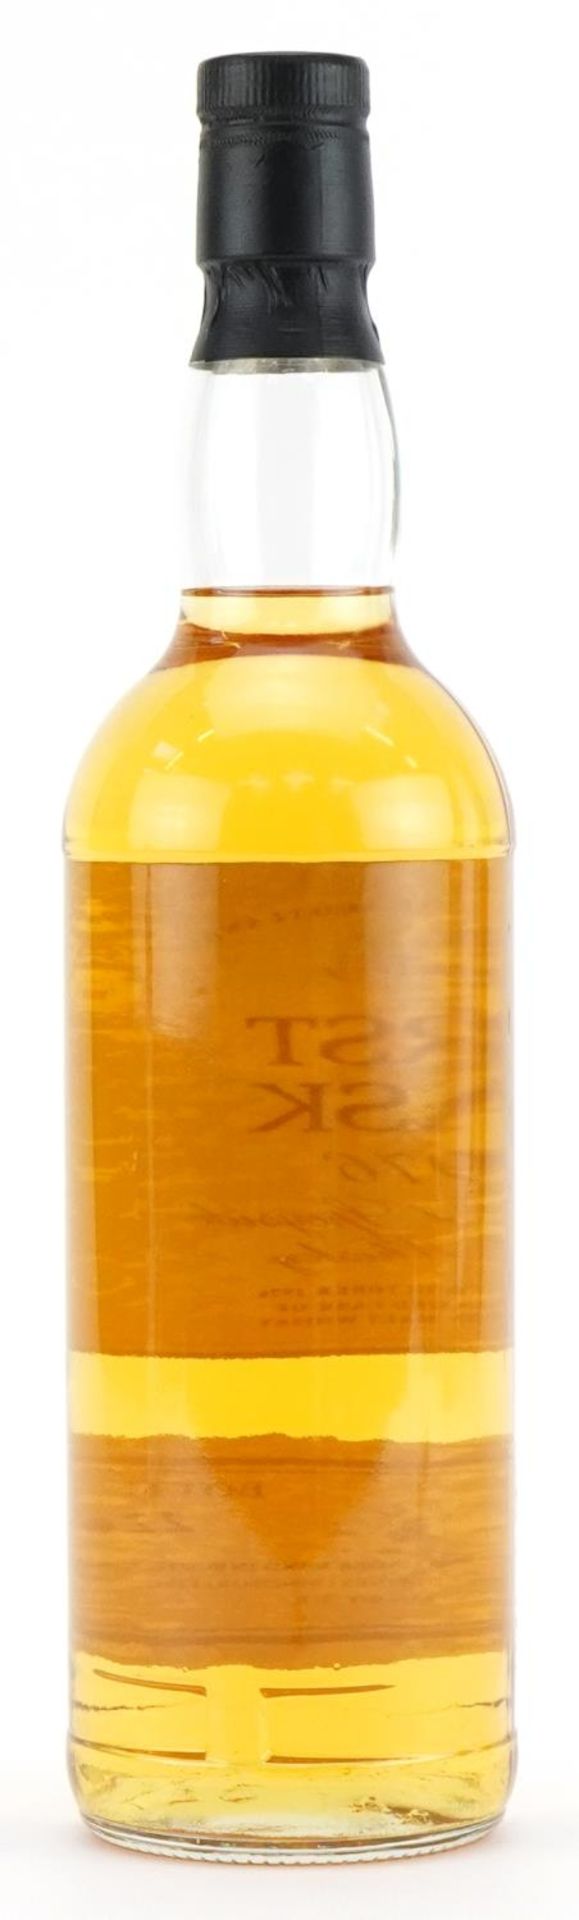 Bottle of First Cask 1976 Tomintoul Speyside 18 Year Old Malt whisky, cask number 7347, bottle - Image 3 of 3